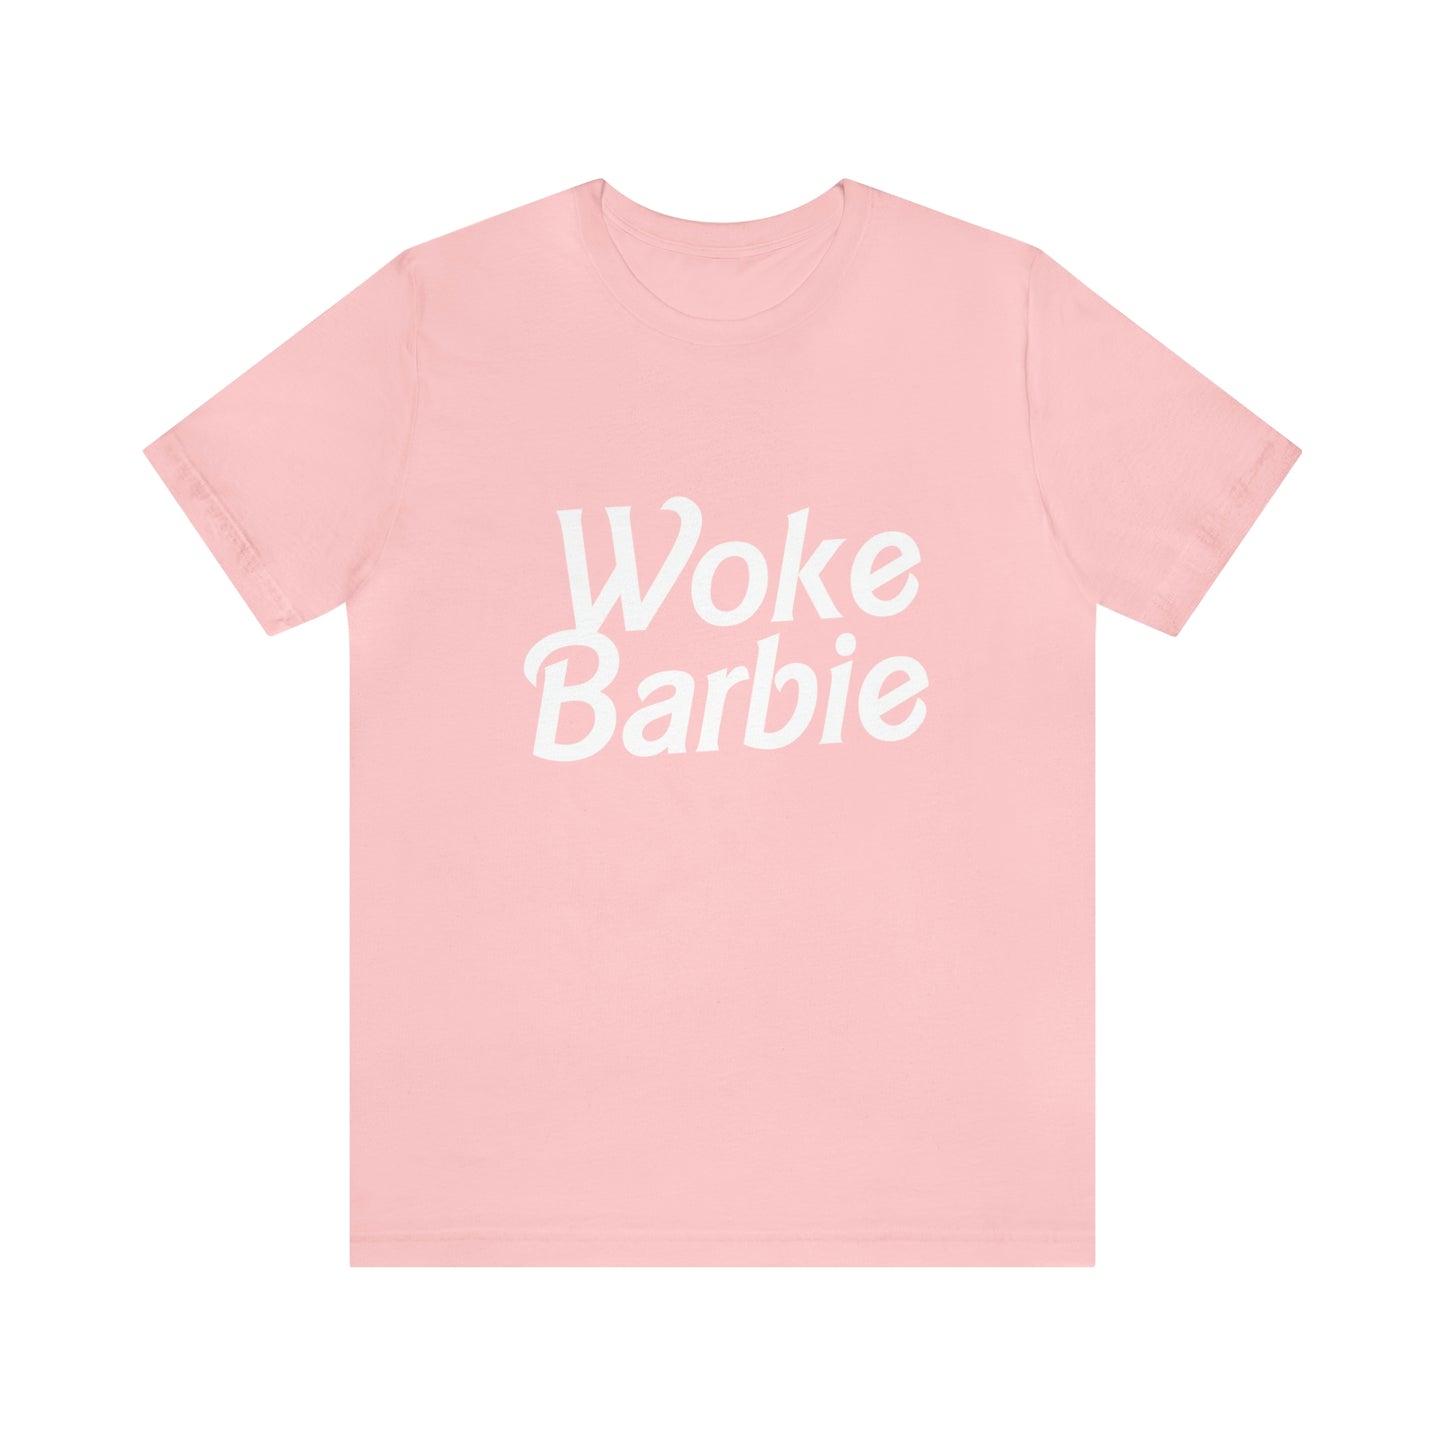 Woke Barbie